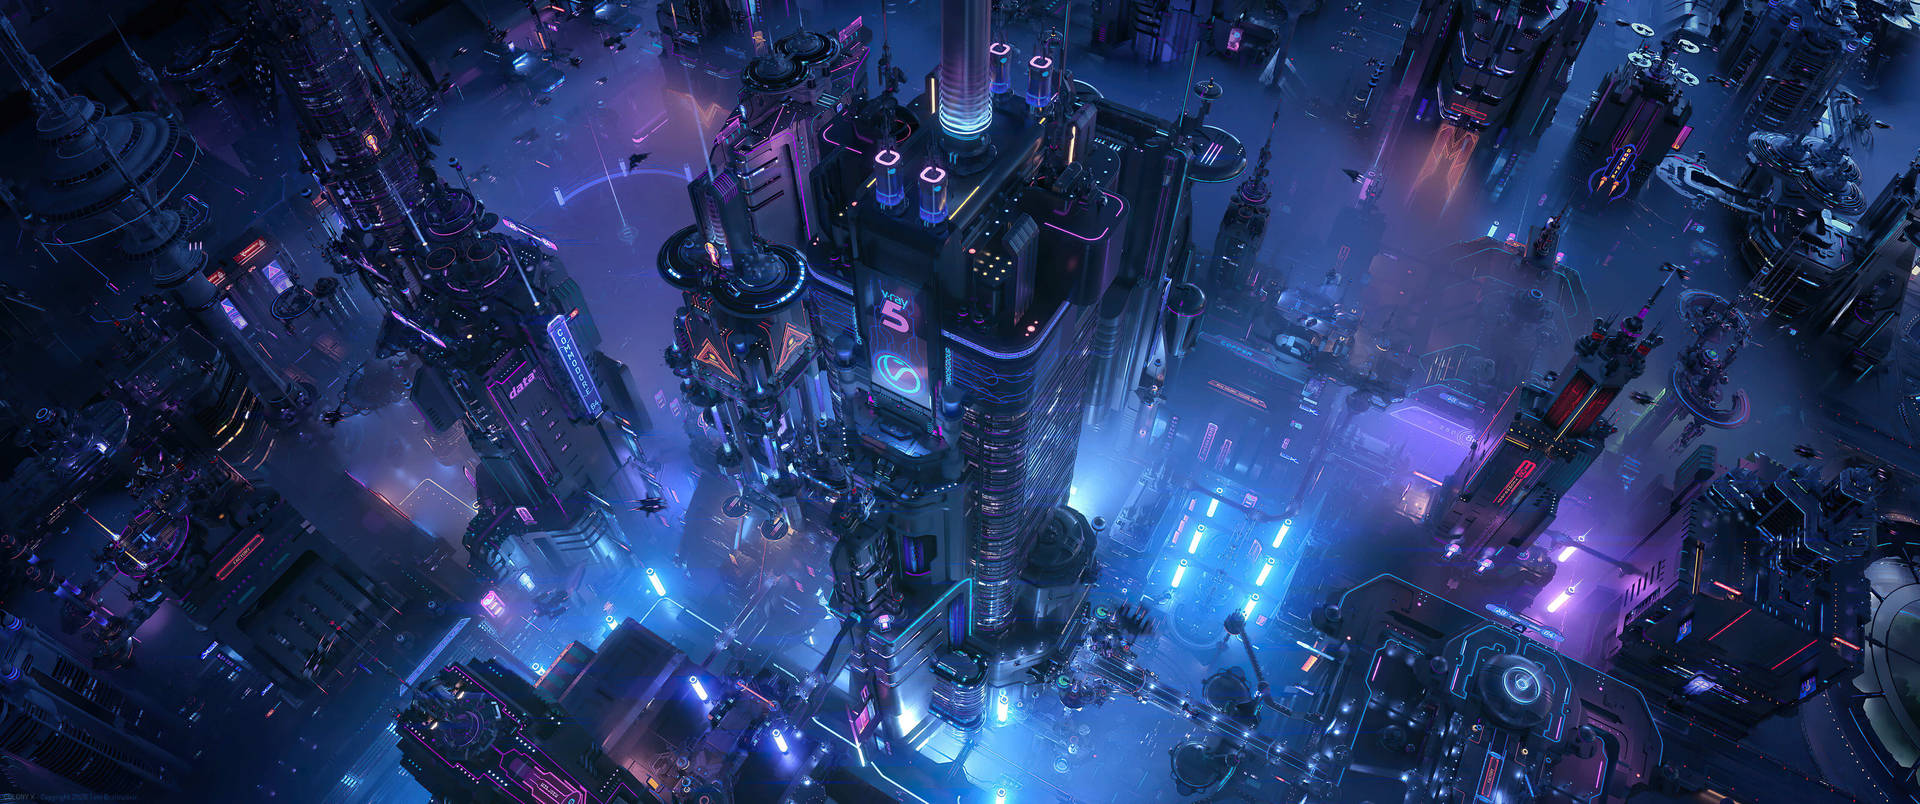 Sci-fi City View Wallpaper